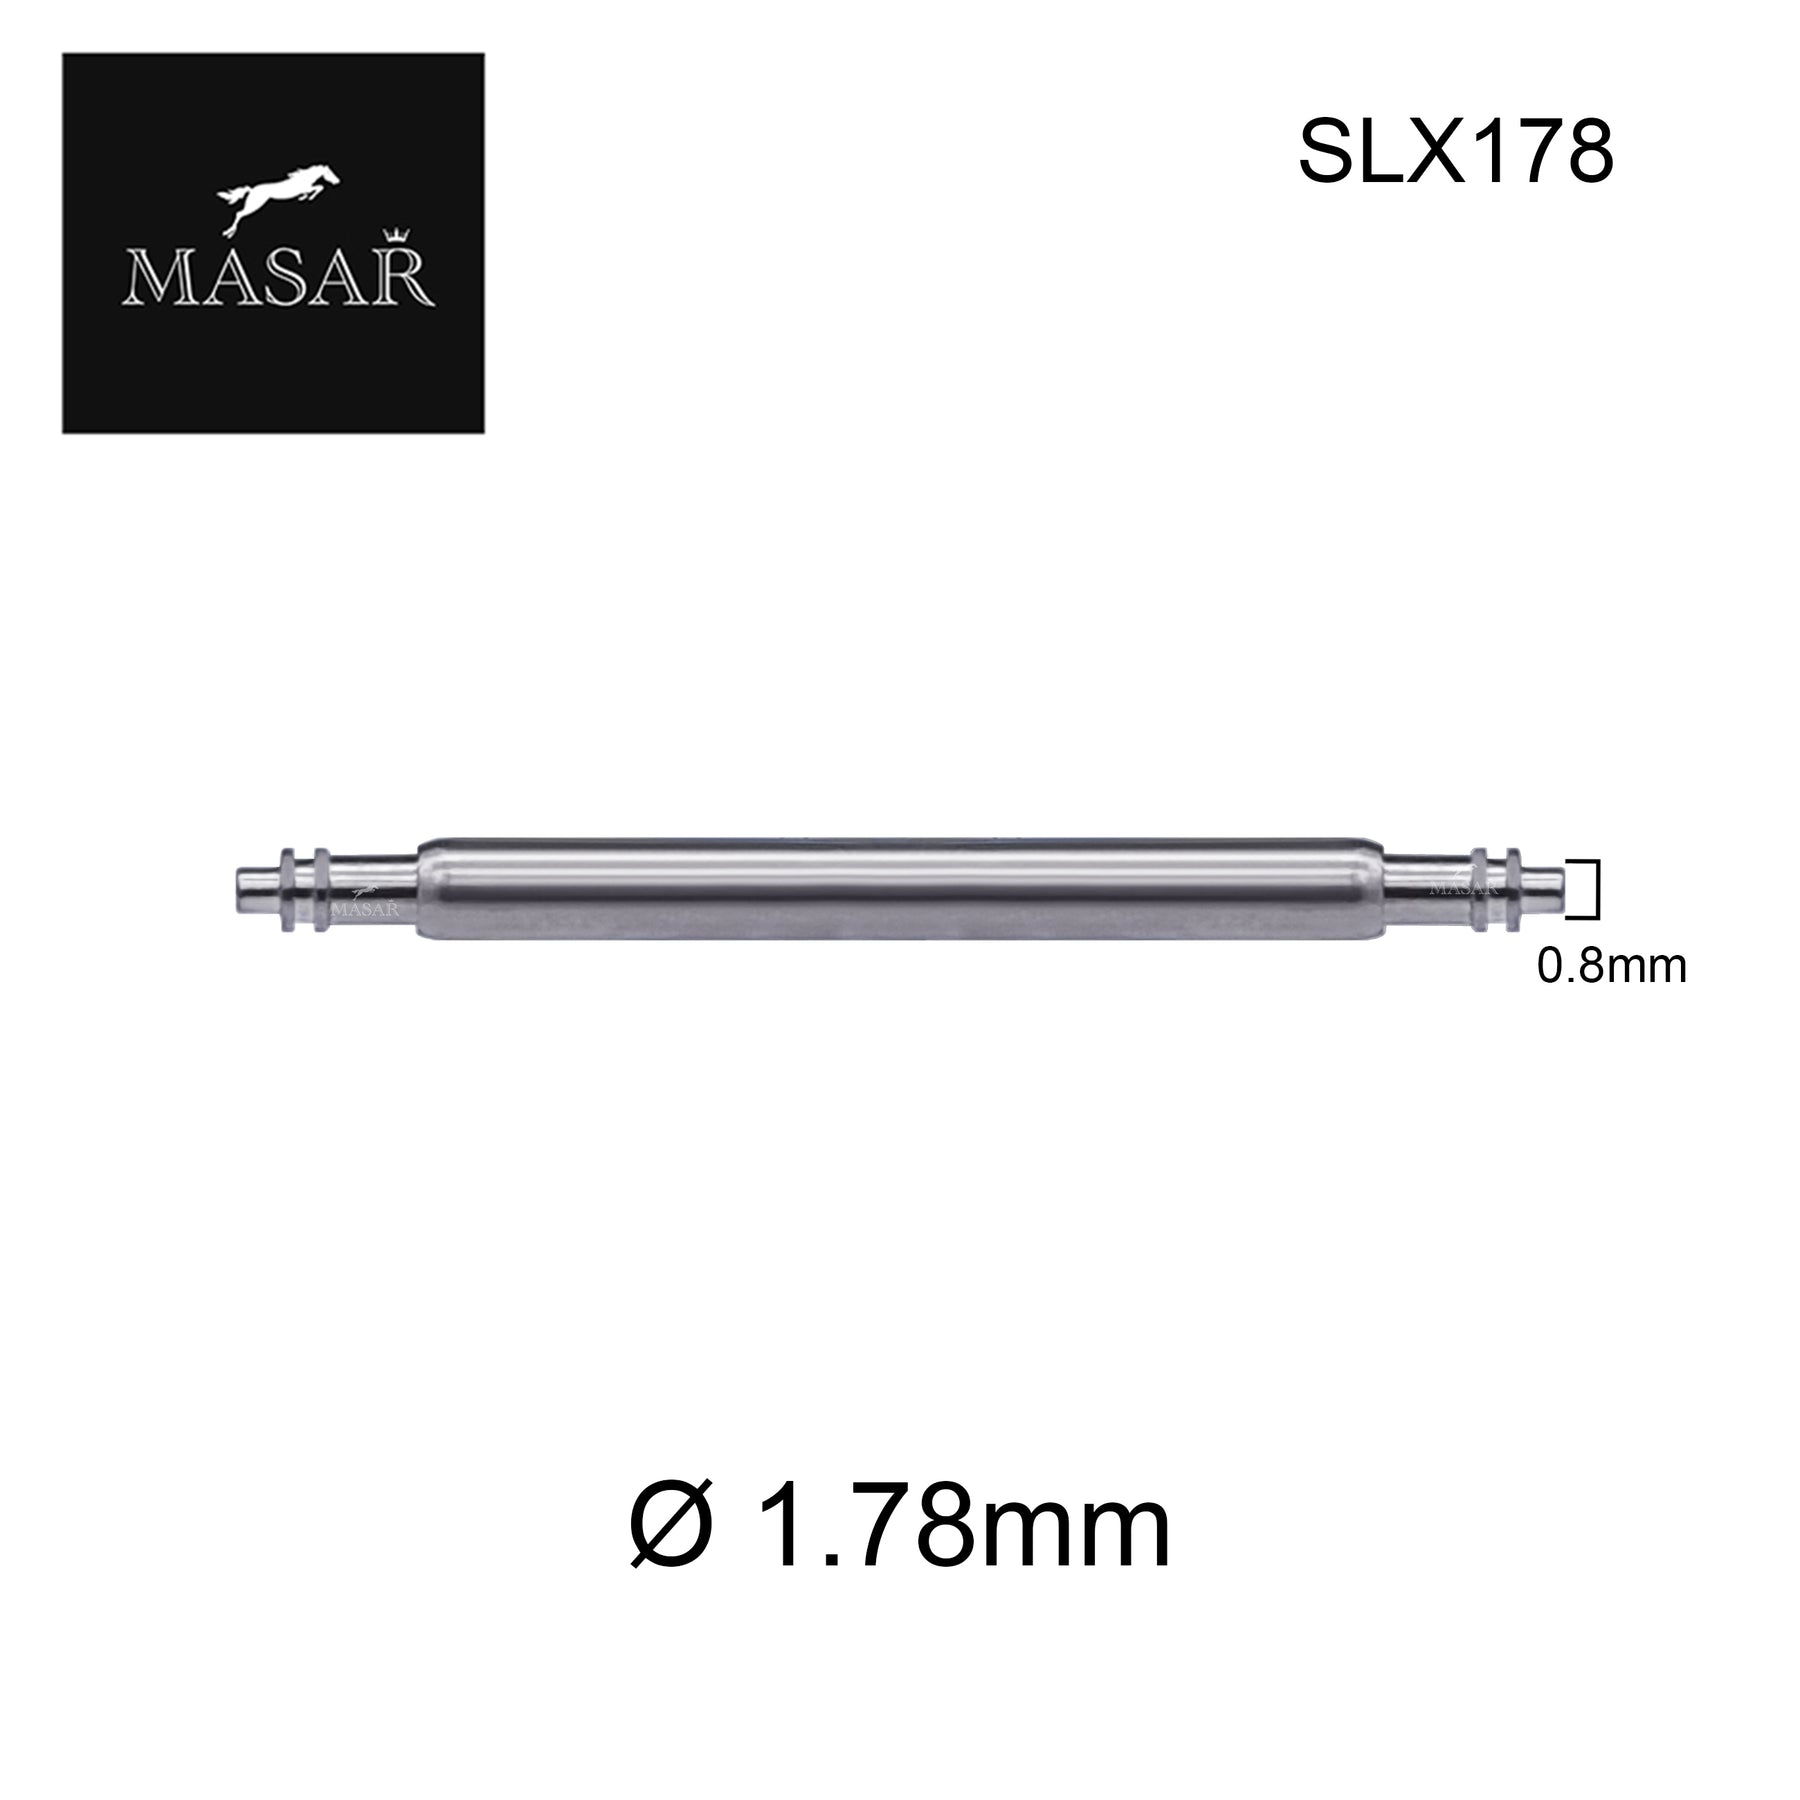 6mm à 44mm SLX178 | Ø 1.78mm - Double-Flange (Bride) - Inox 316L